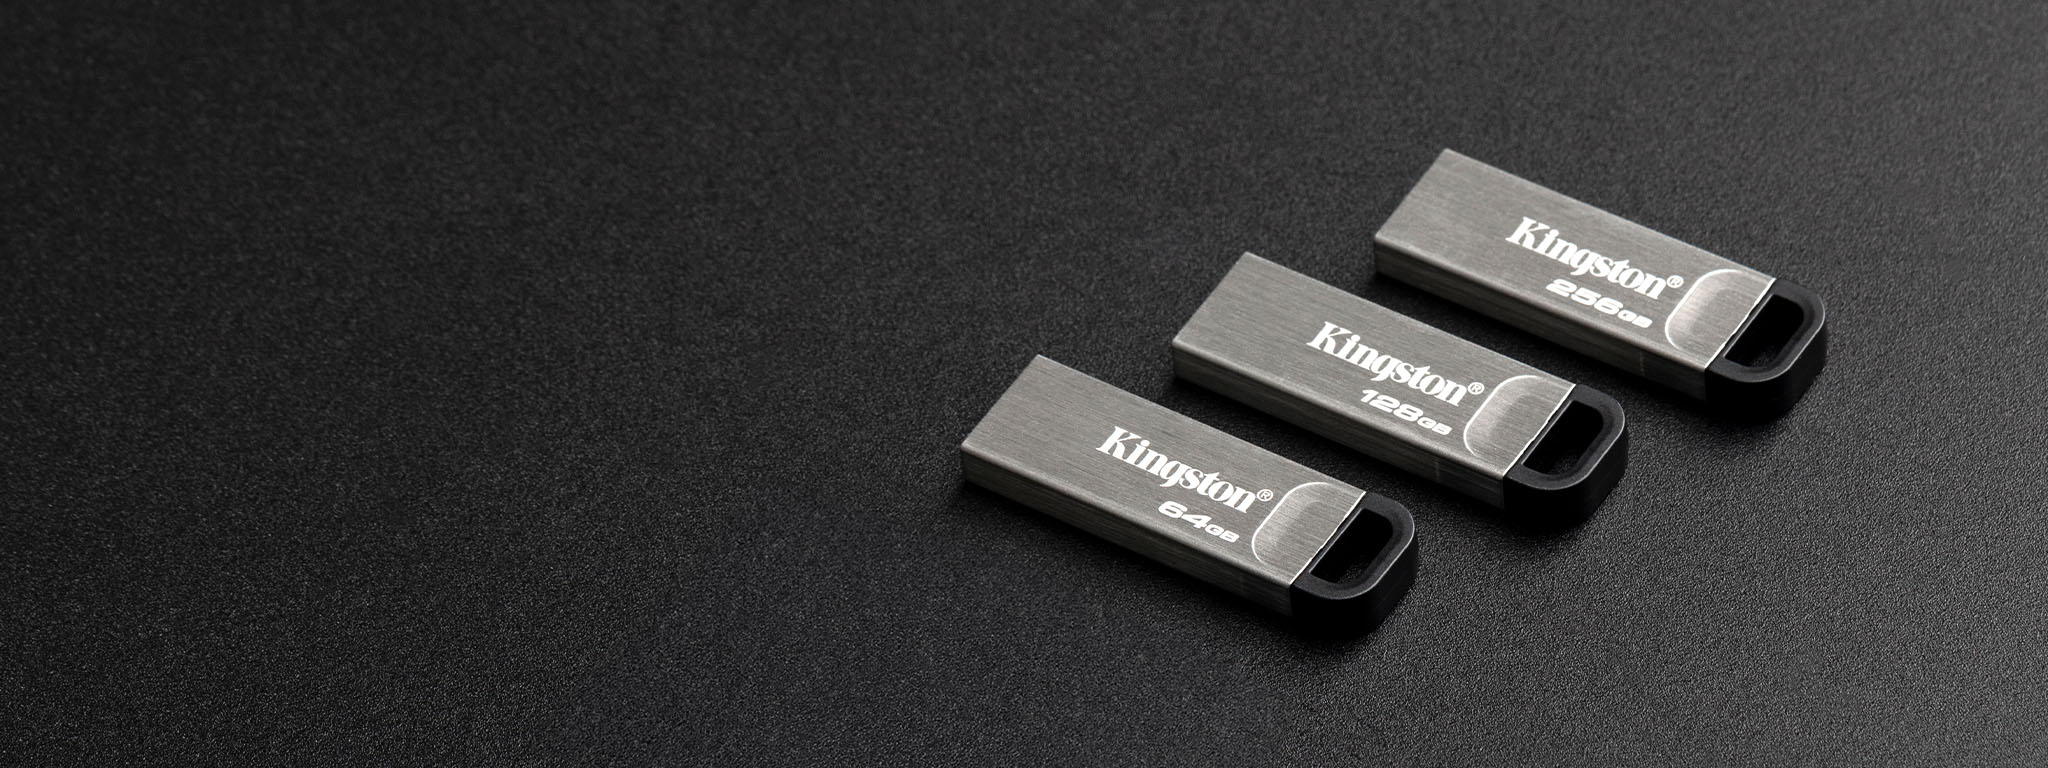 Чотири USB флеш-накопичувачі DT Kyson різної ємності, що лежать на чорній поверхні